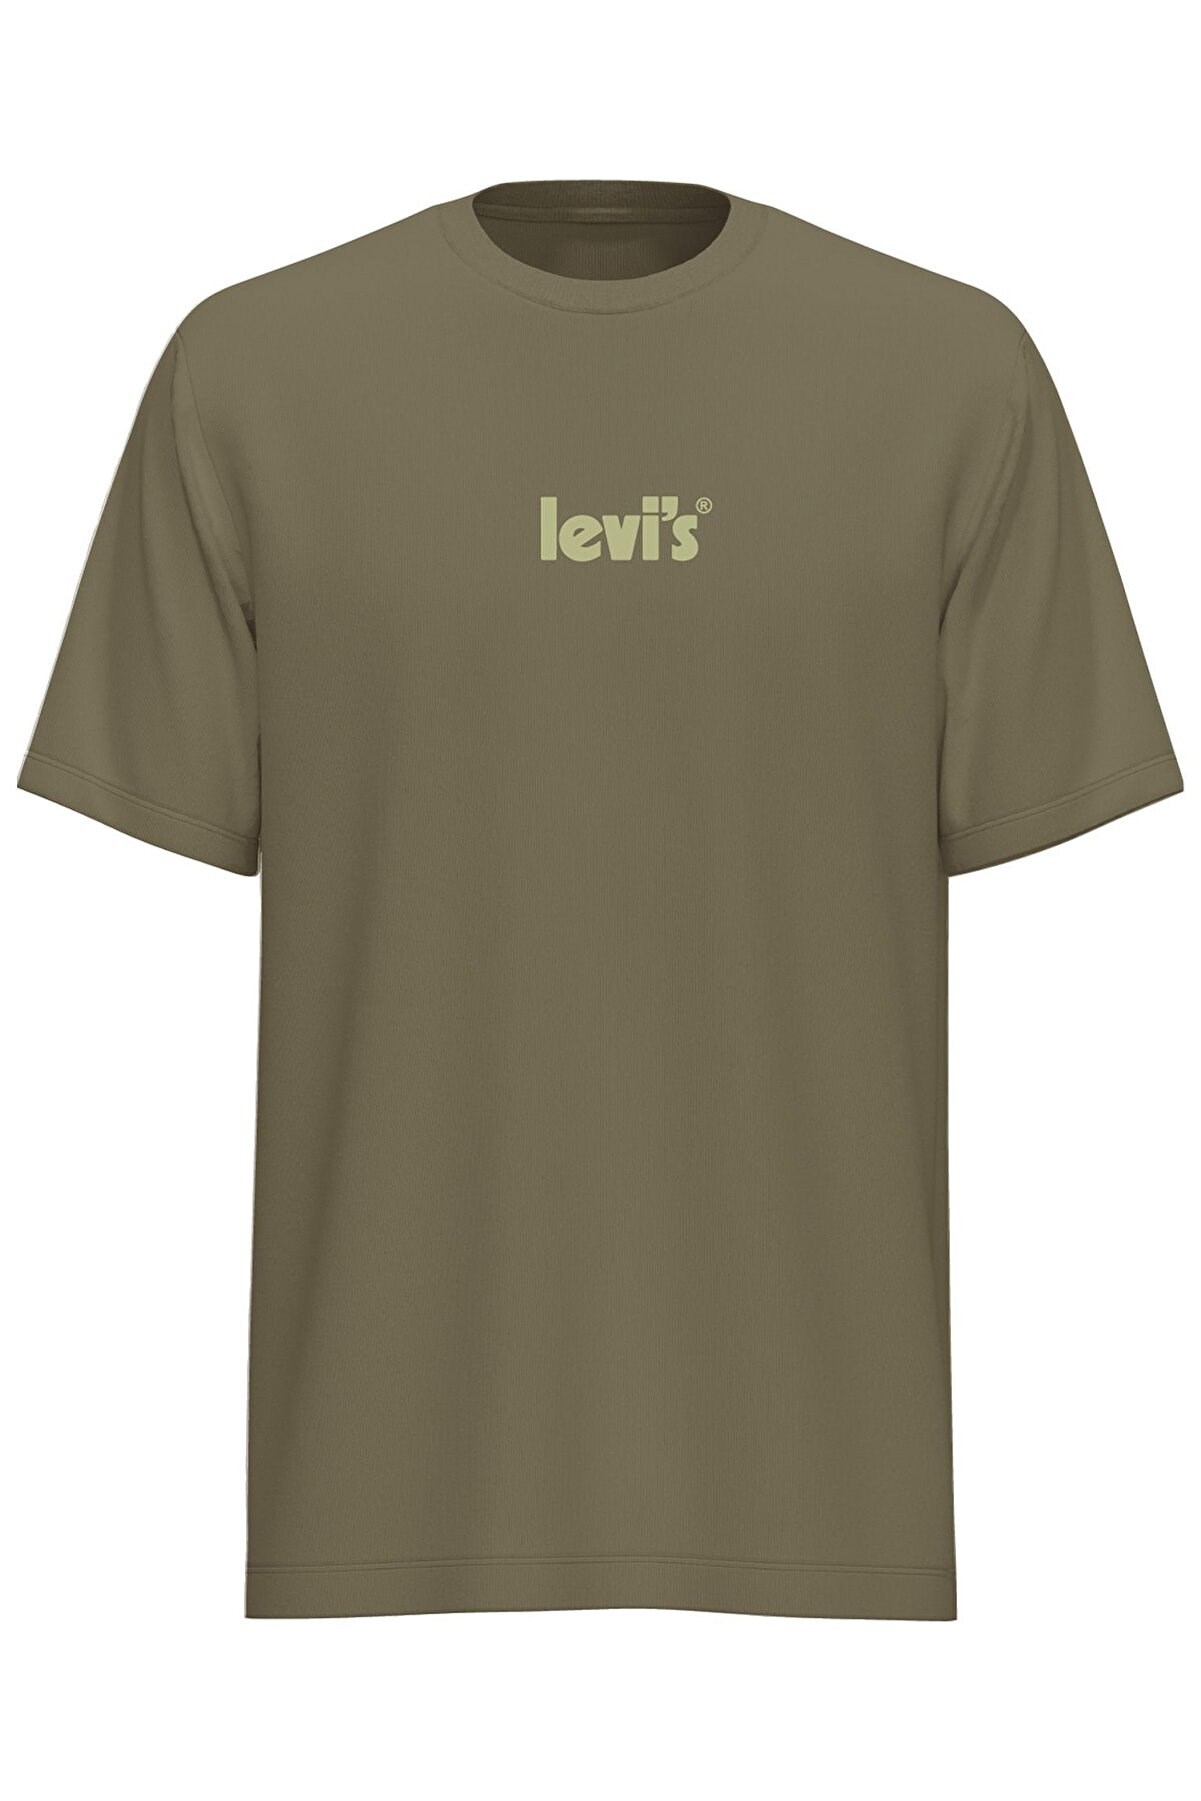 Levis Erkek T-Shirt A2082-0034 